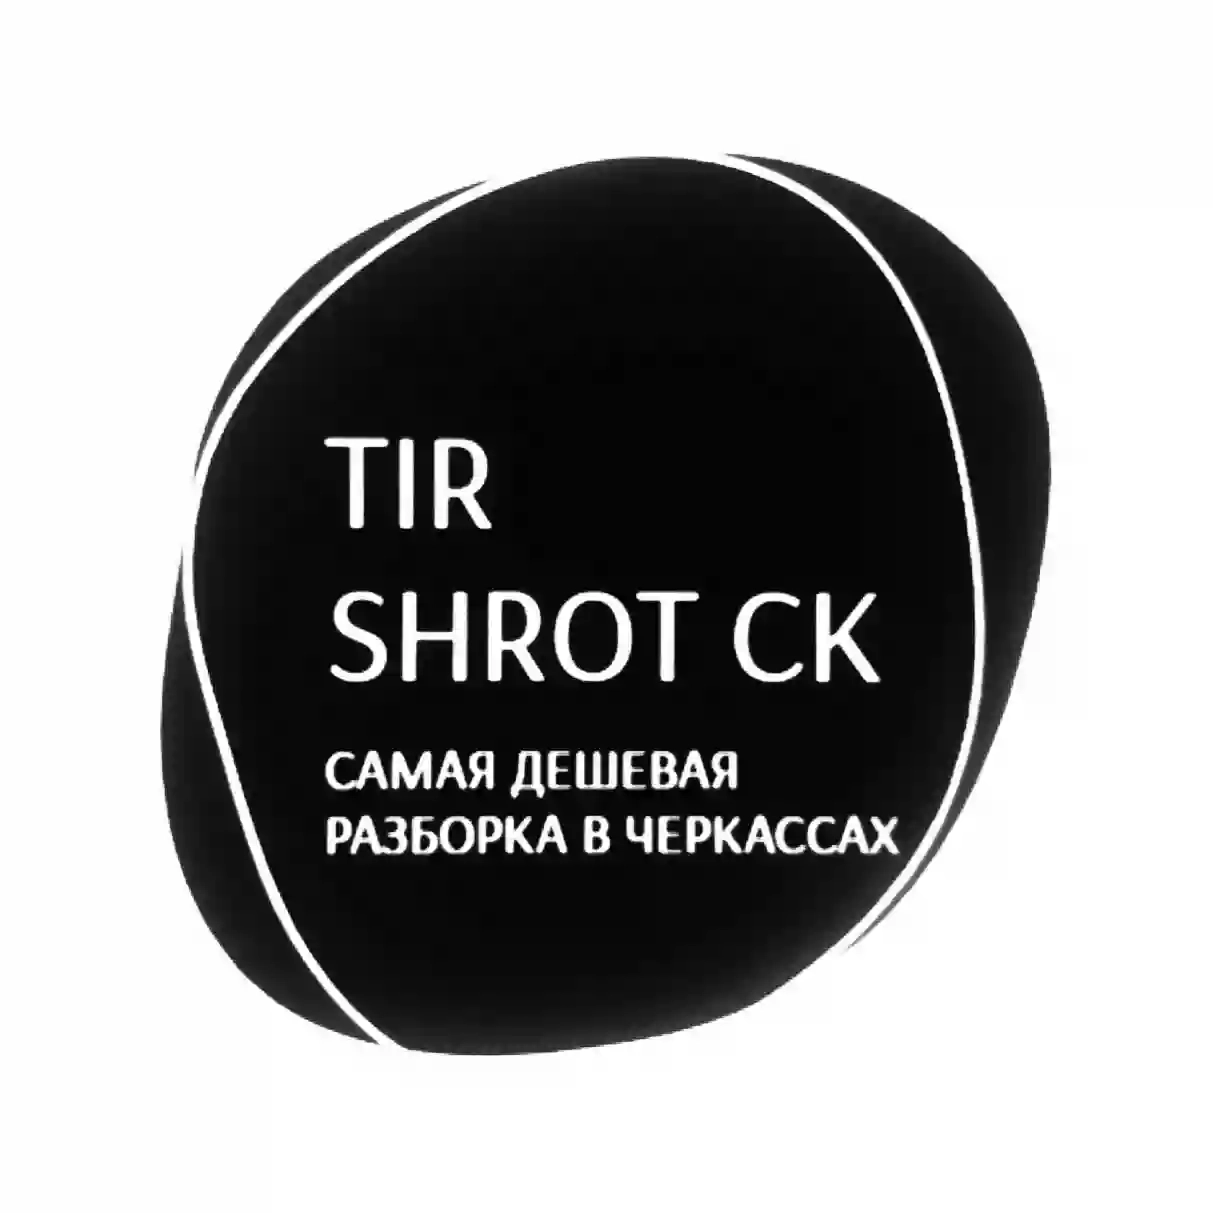 TIR SHROT CK